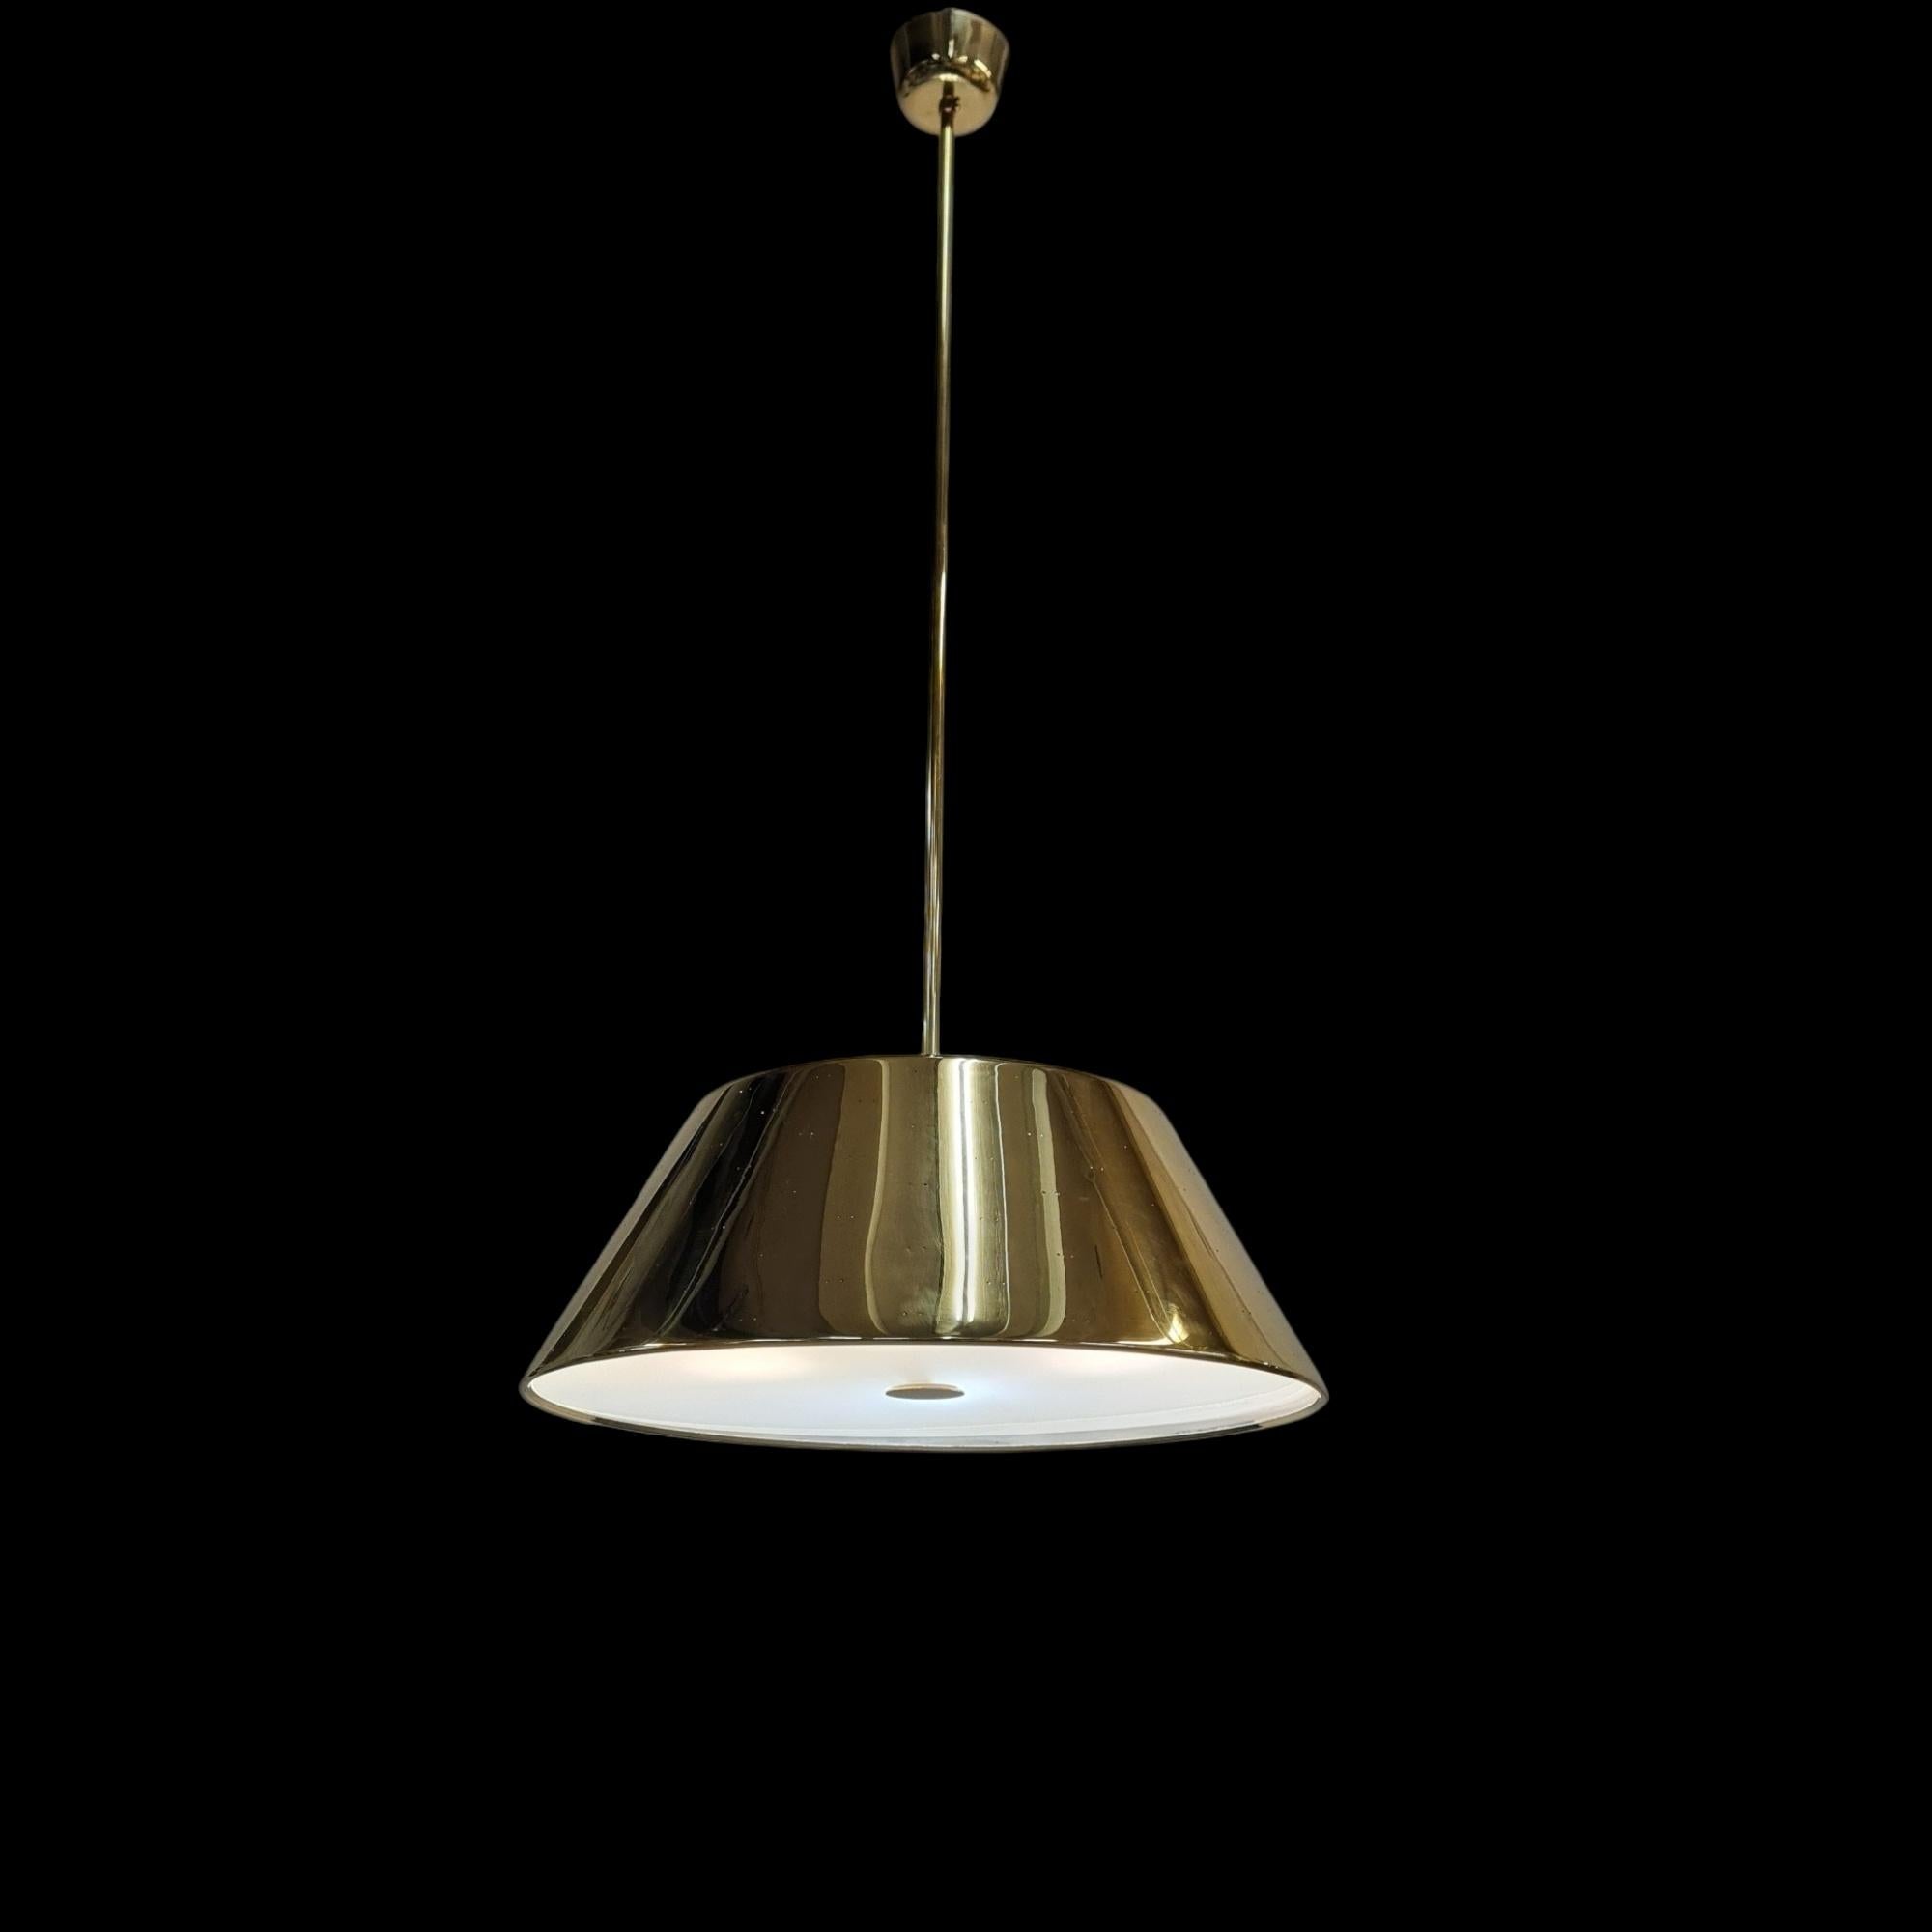 Un grand plafonnier en laiton du maître du design finlandais Paavo Tynell. Cette lampe en laiton de grande taille a un diamètre de 60 cm et est considérablement plus grande que les modèles plus courants de lampes de 40 à 50 cm. La suspension est